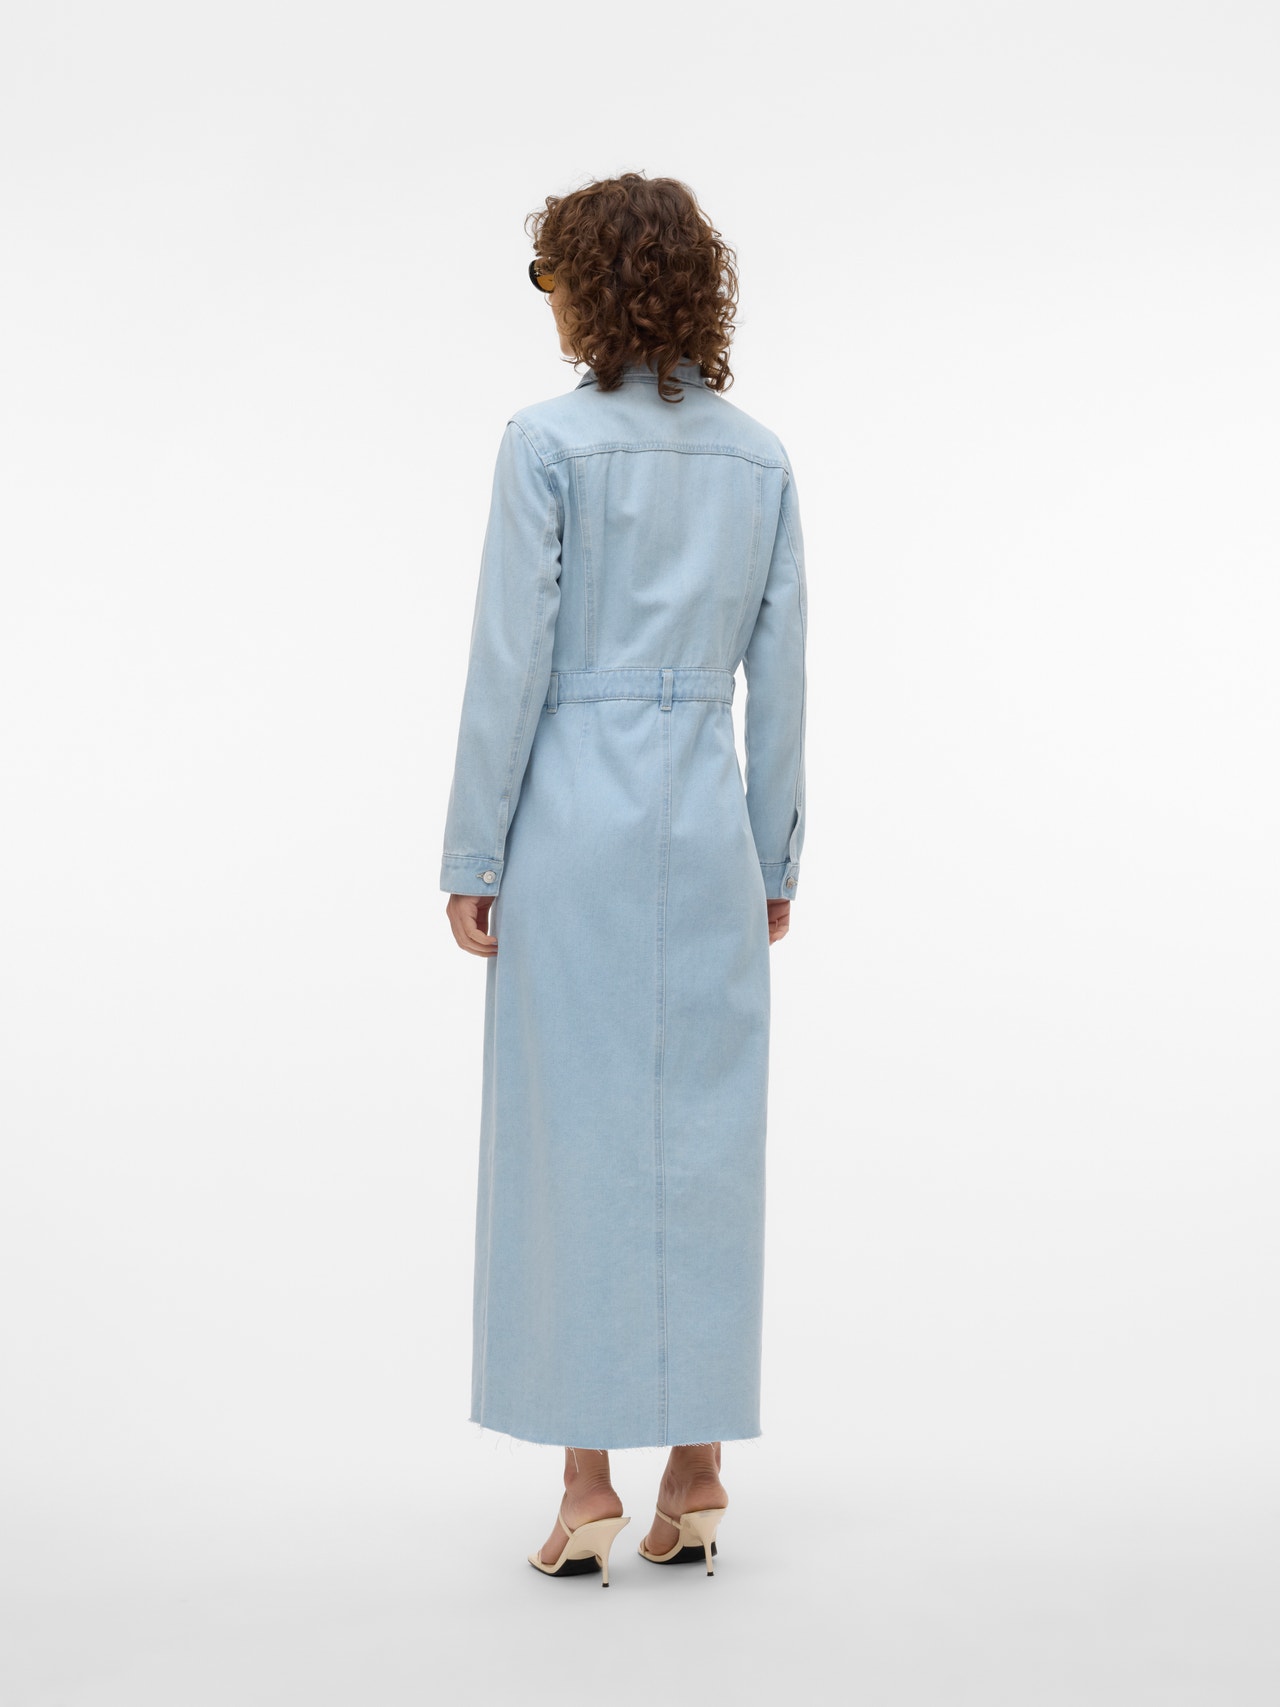 Vero Moda VMMOLLY Long dress -Light Blue Denim - 10311586